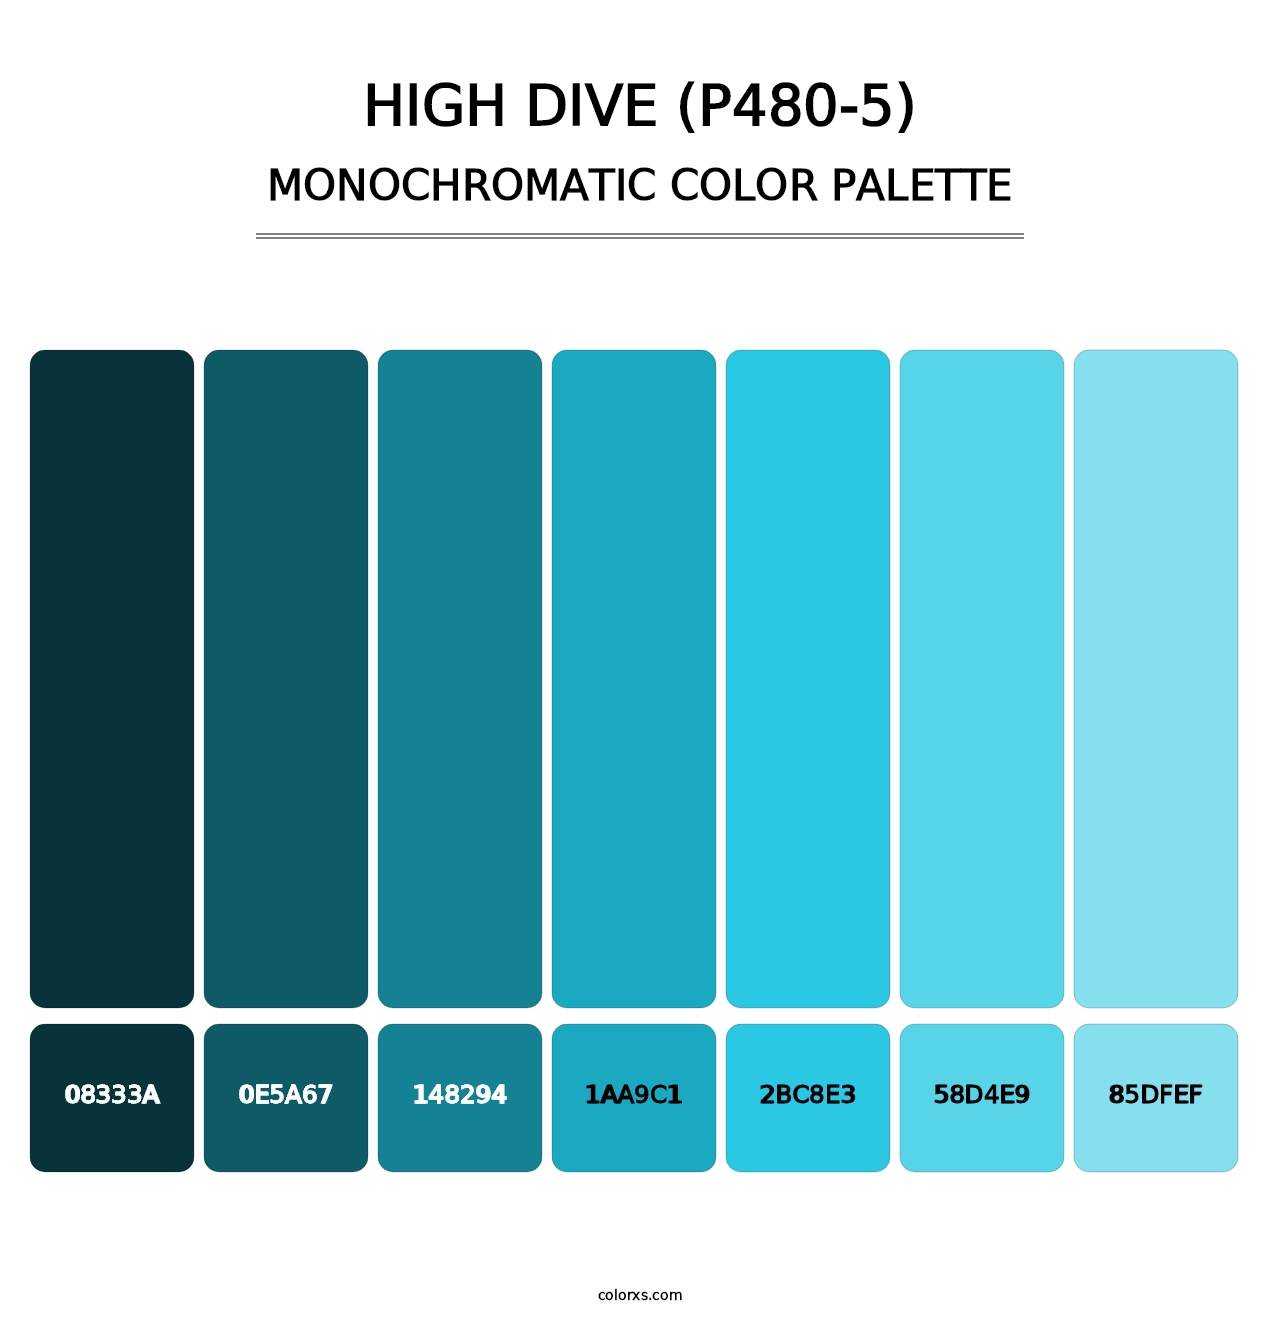 High Dive (P480-5) - Monochromatic Color Palette